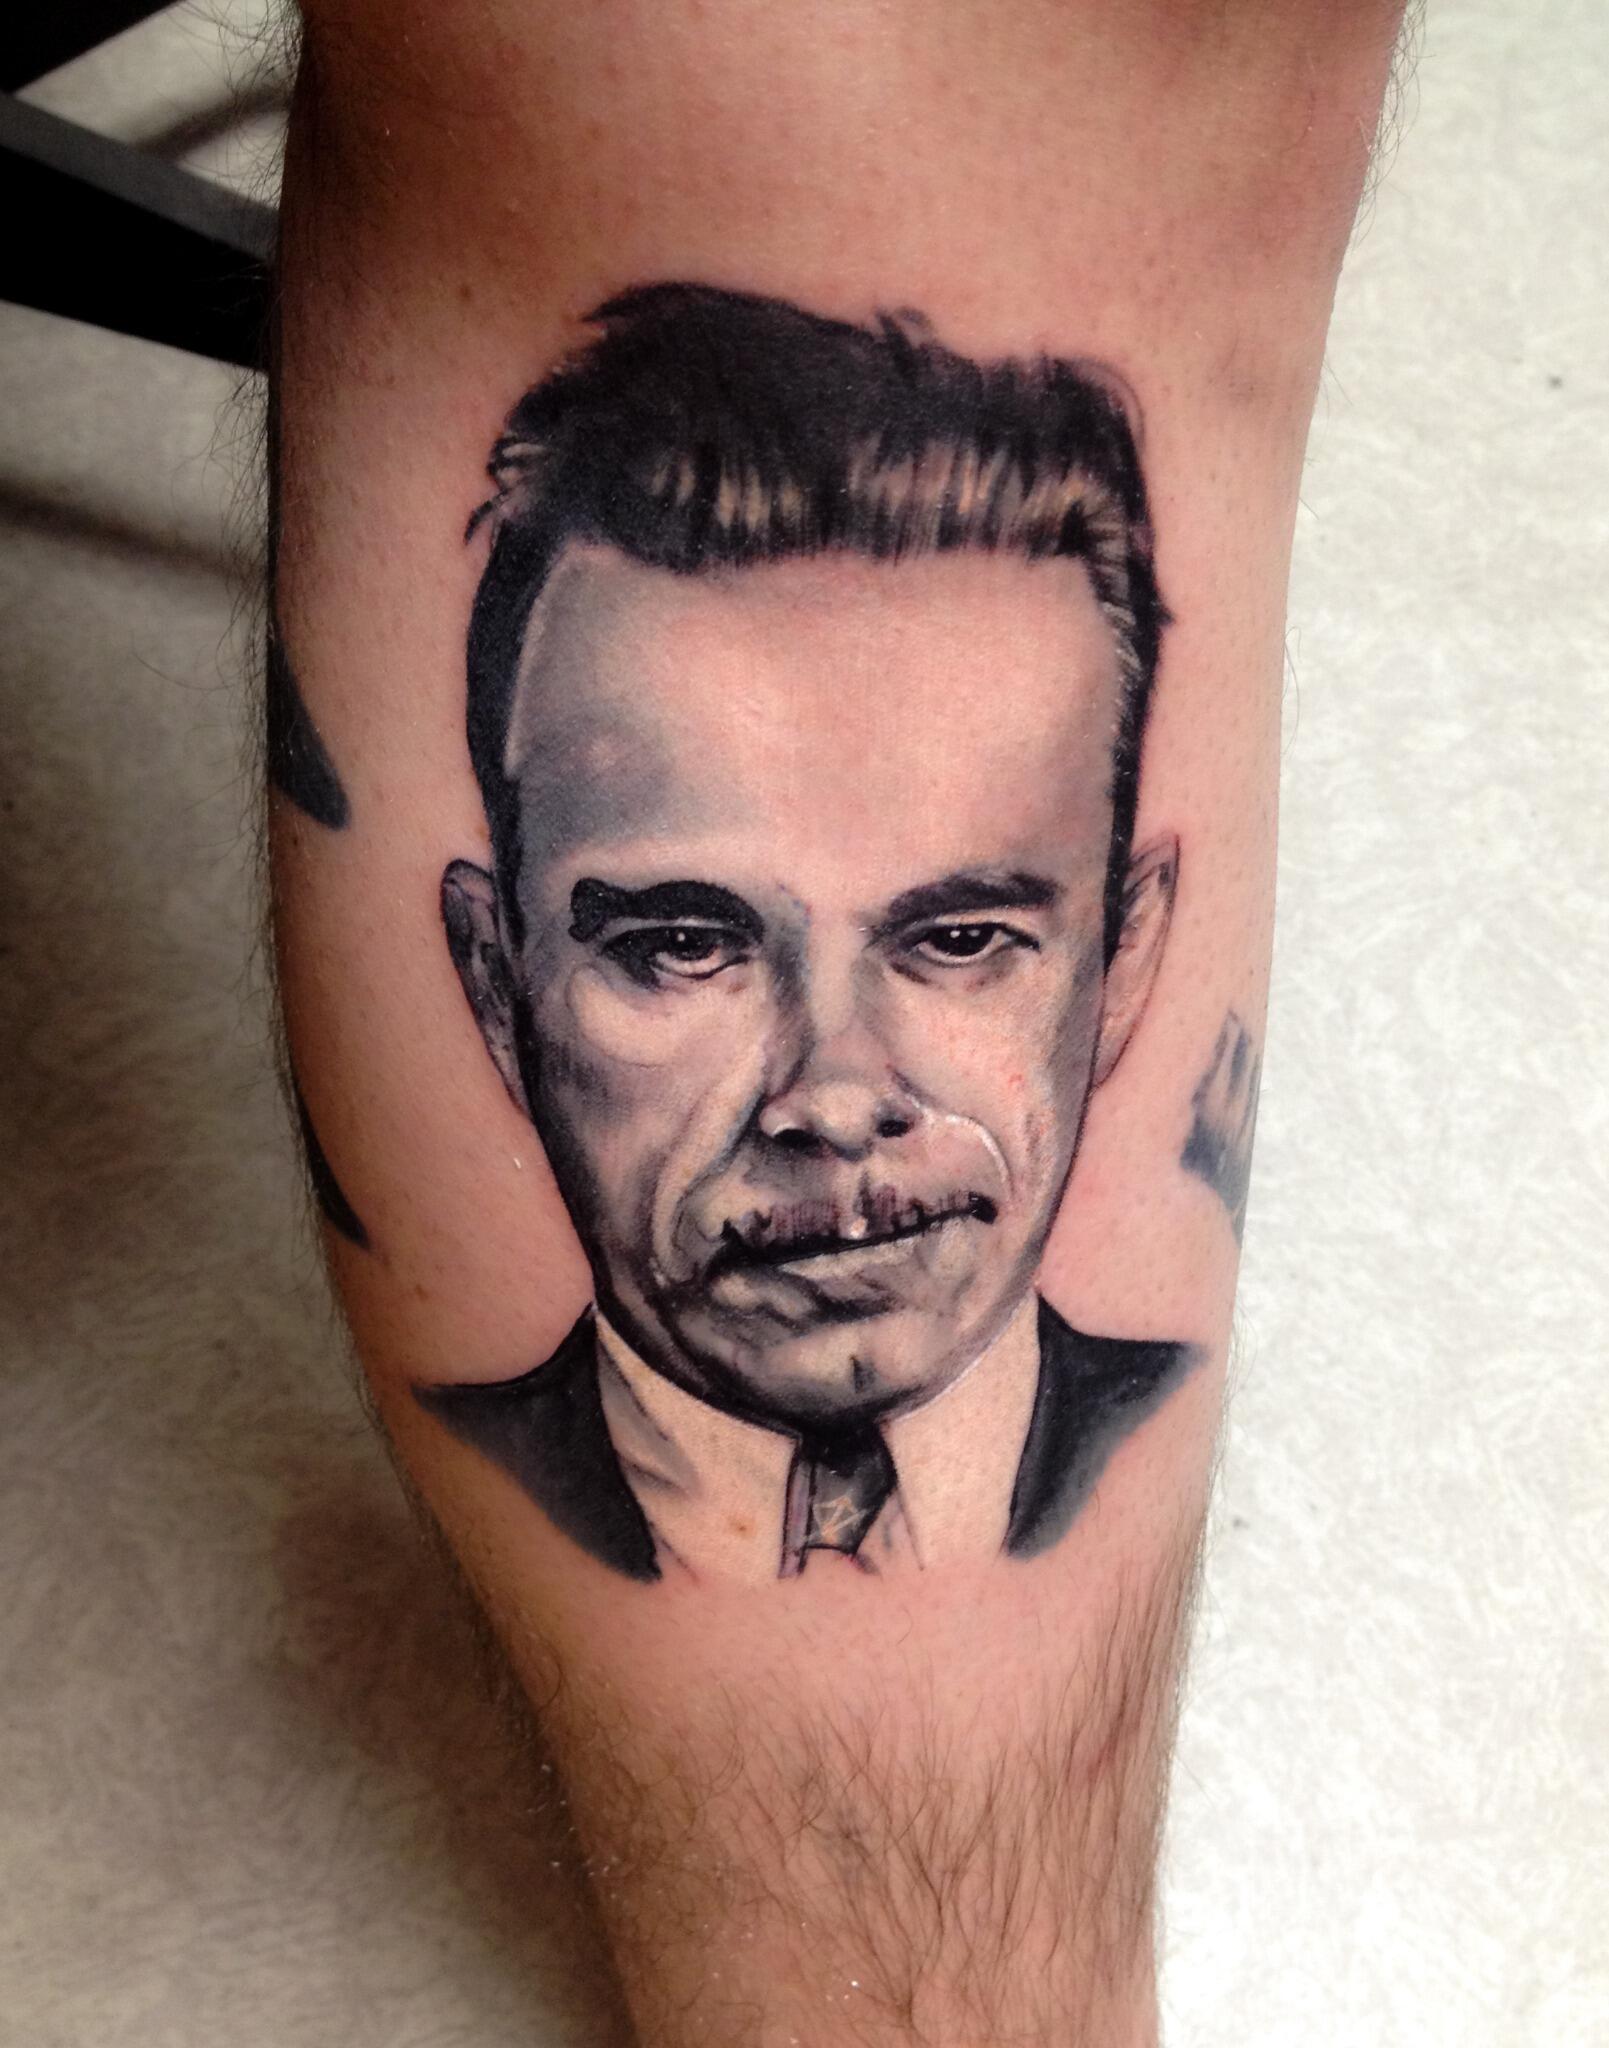 Artist captures Dillinger in unique portrait